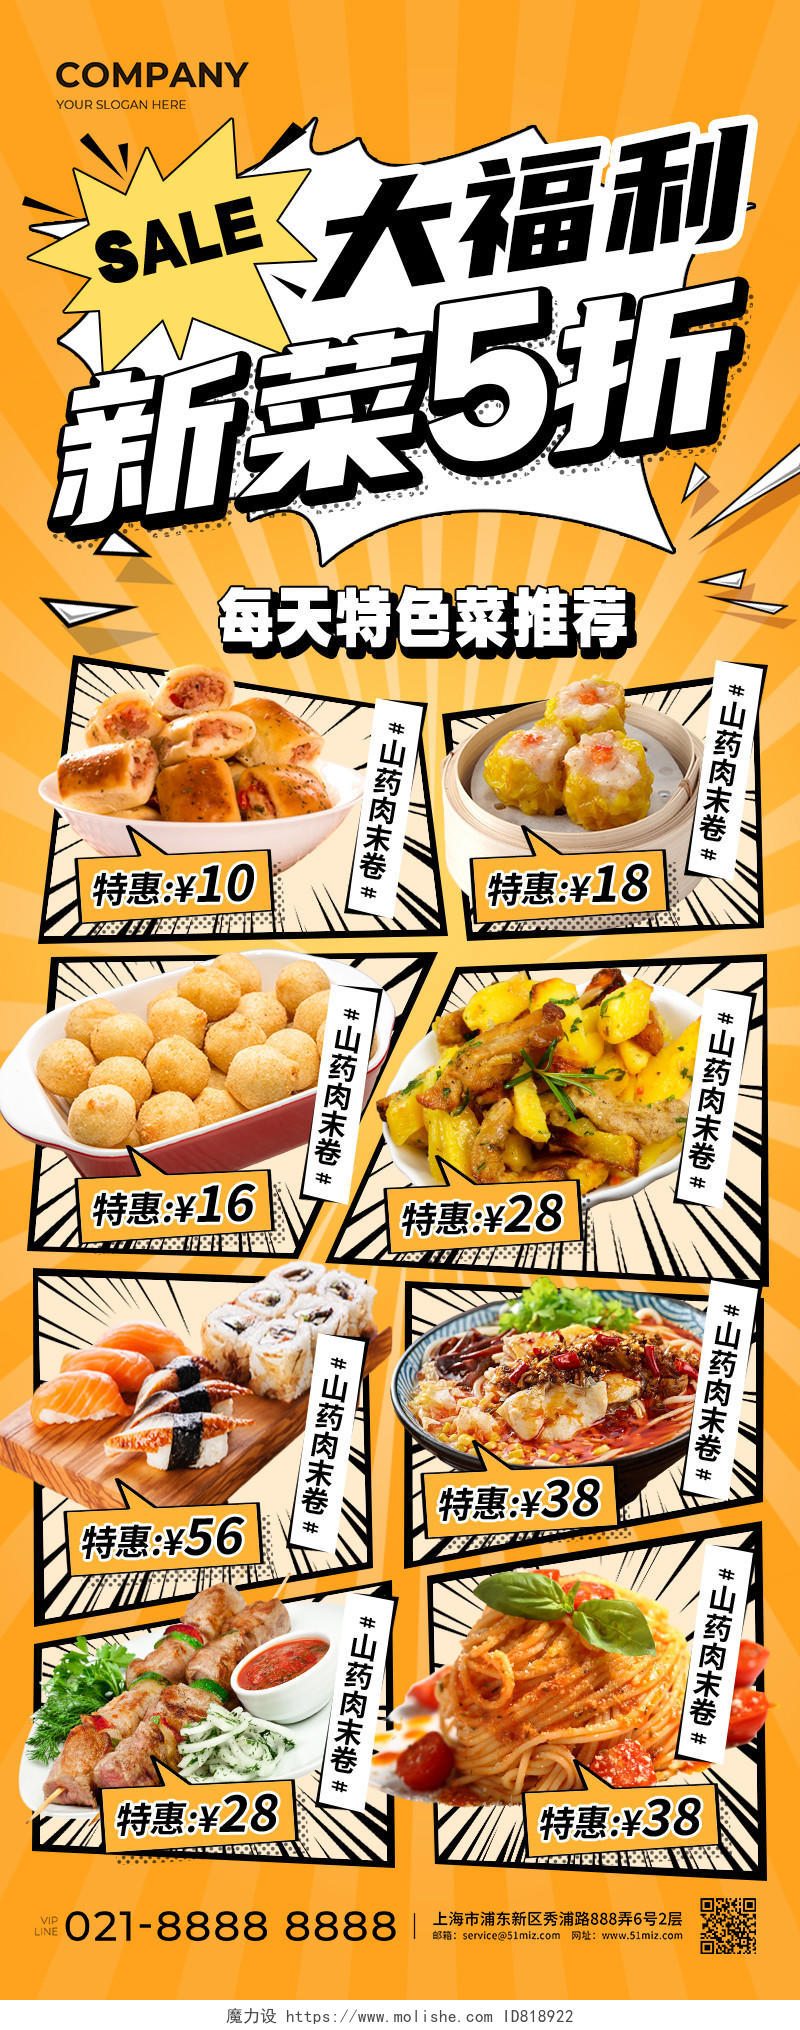 橙色漫画风大福利新菜5折餐厅美食类促销长图